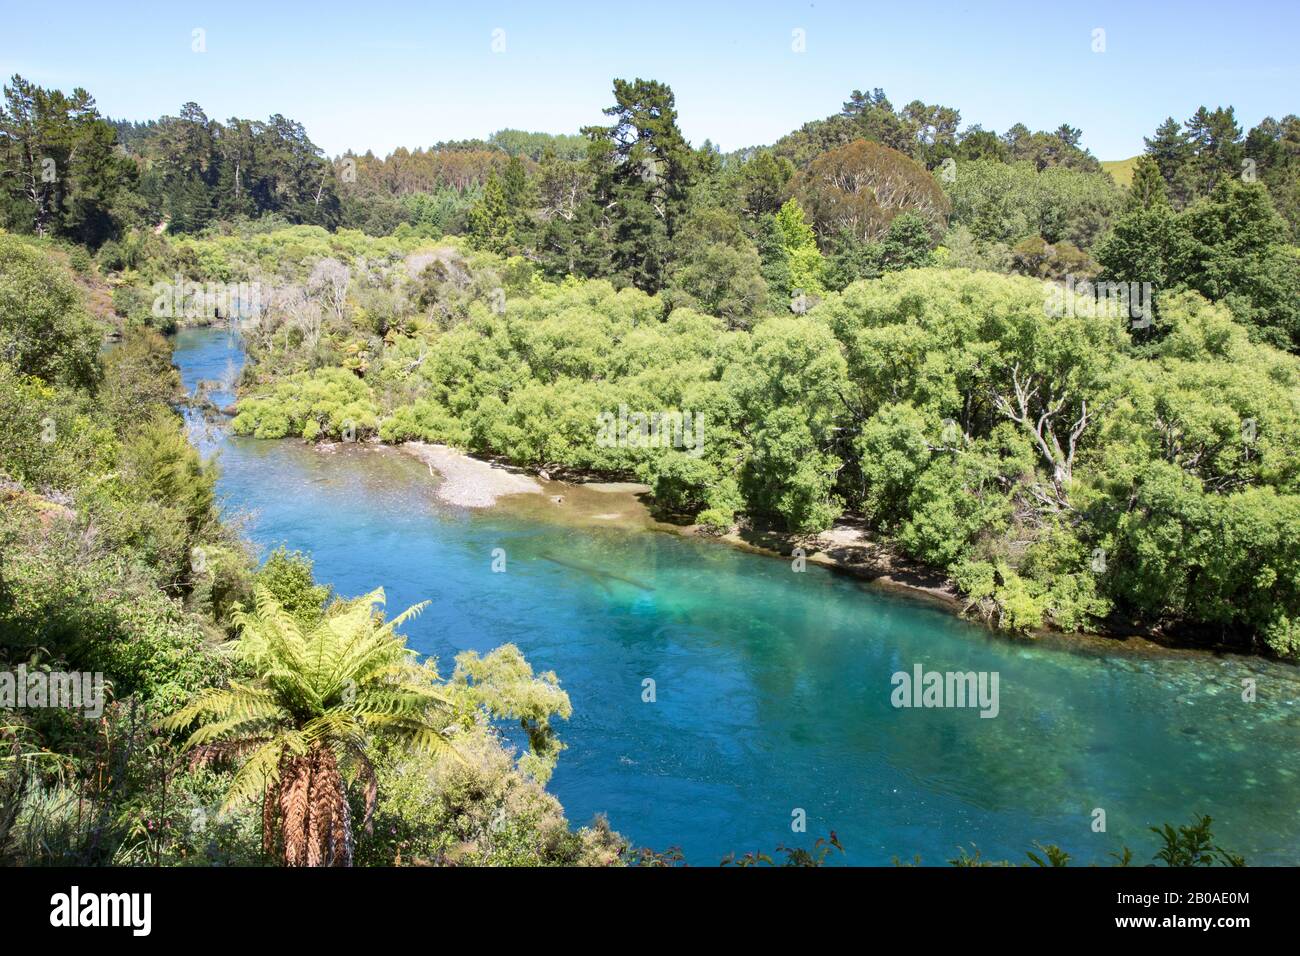 Vegetazione verde accanto al fiume con acque turchesi e limpide a Taupo Foto Stock